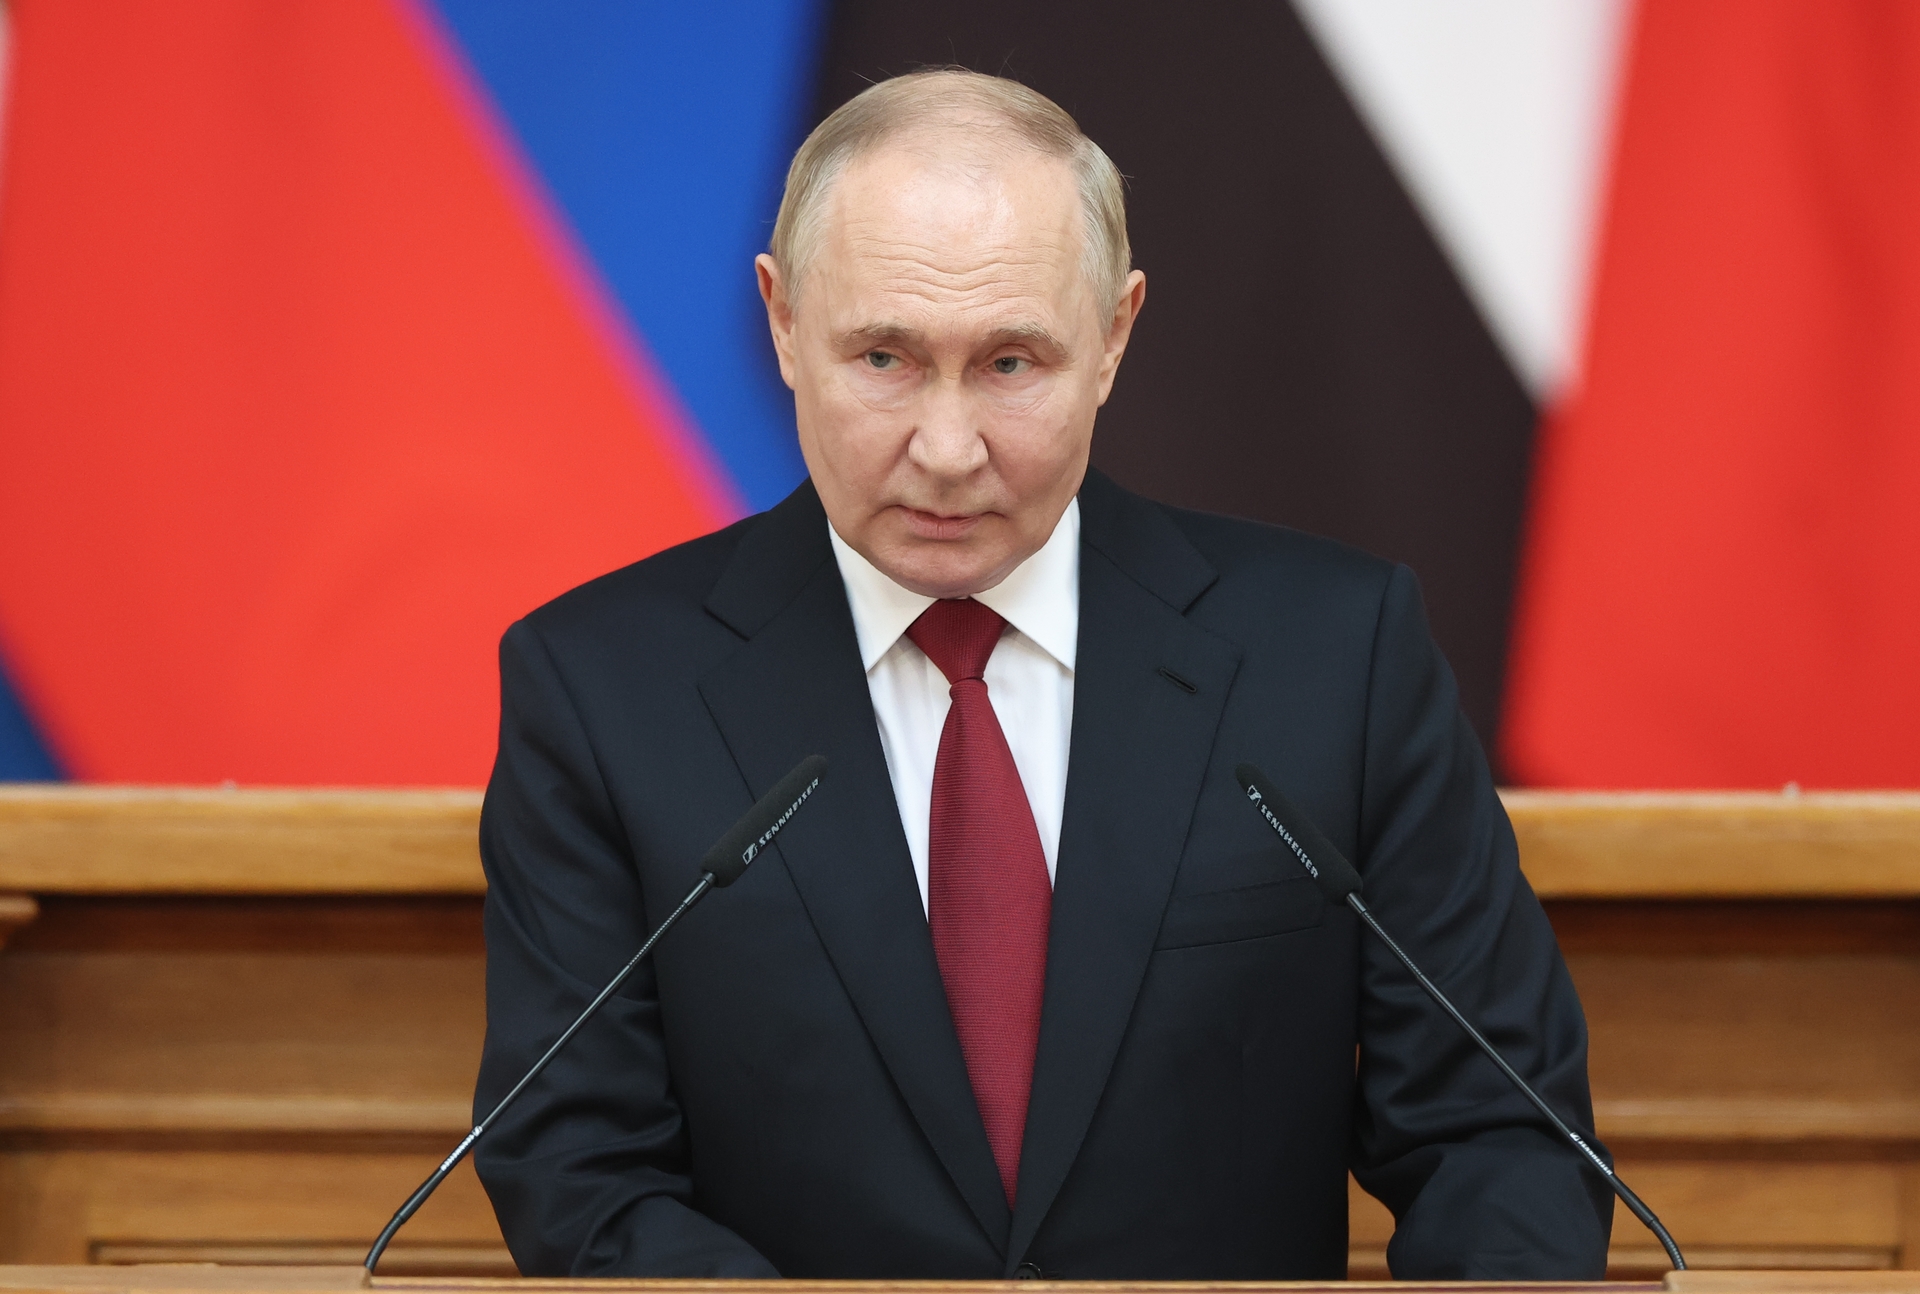 Putin explica como o Ocidente está tentando com "força e chantagem" preservar seu domínio no mundo